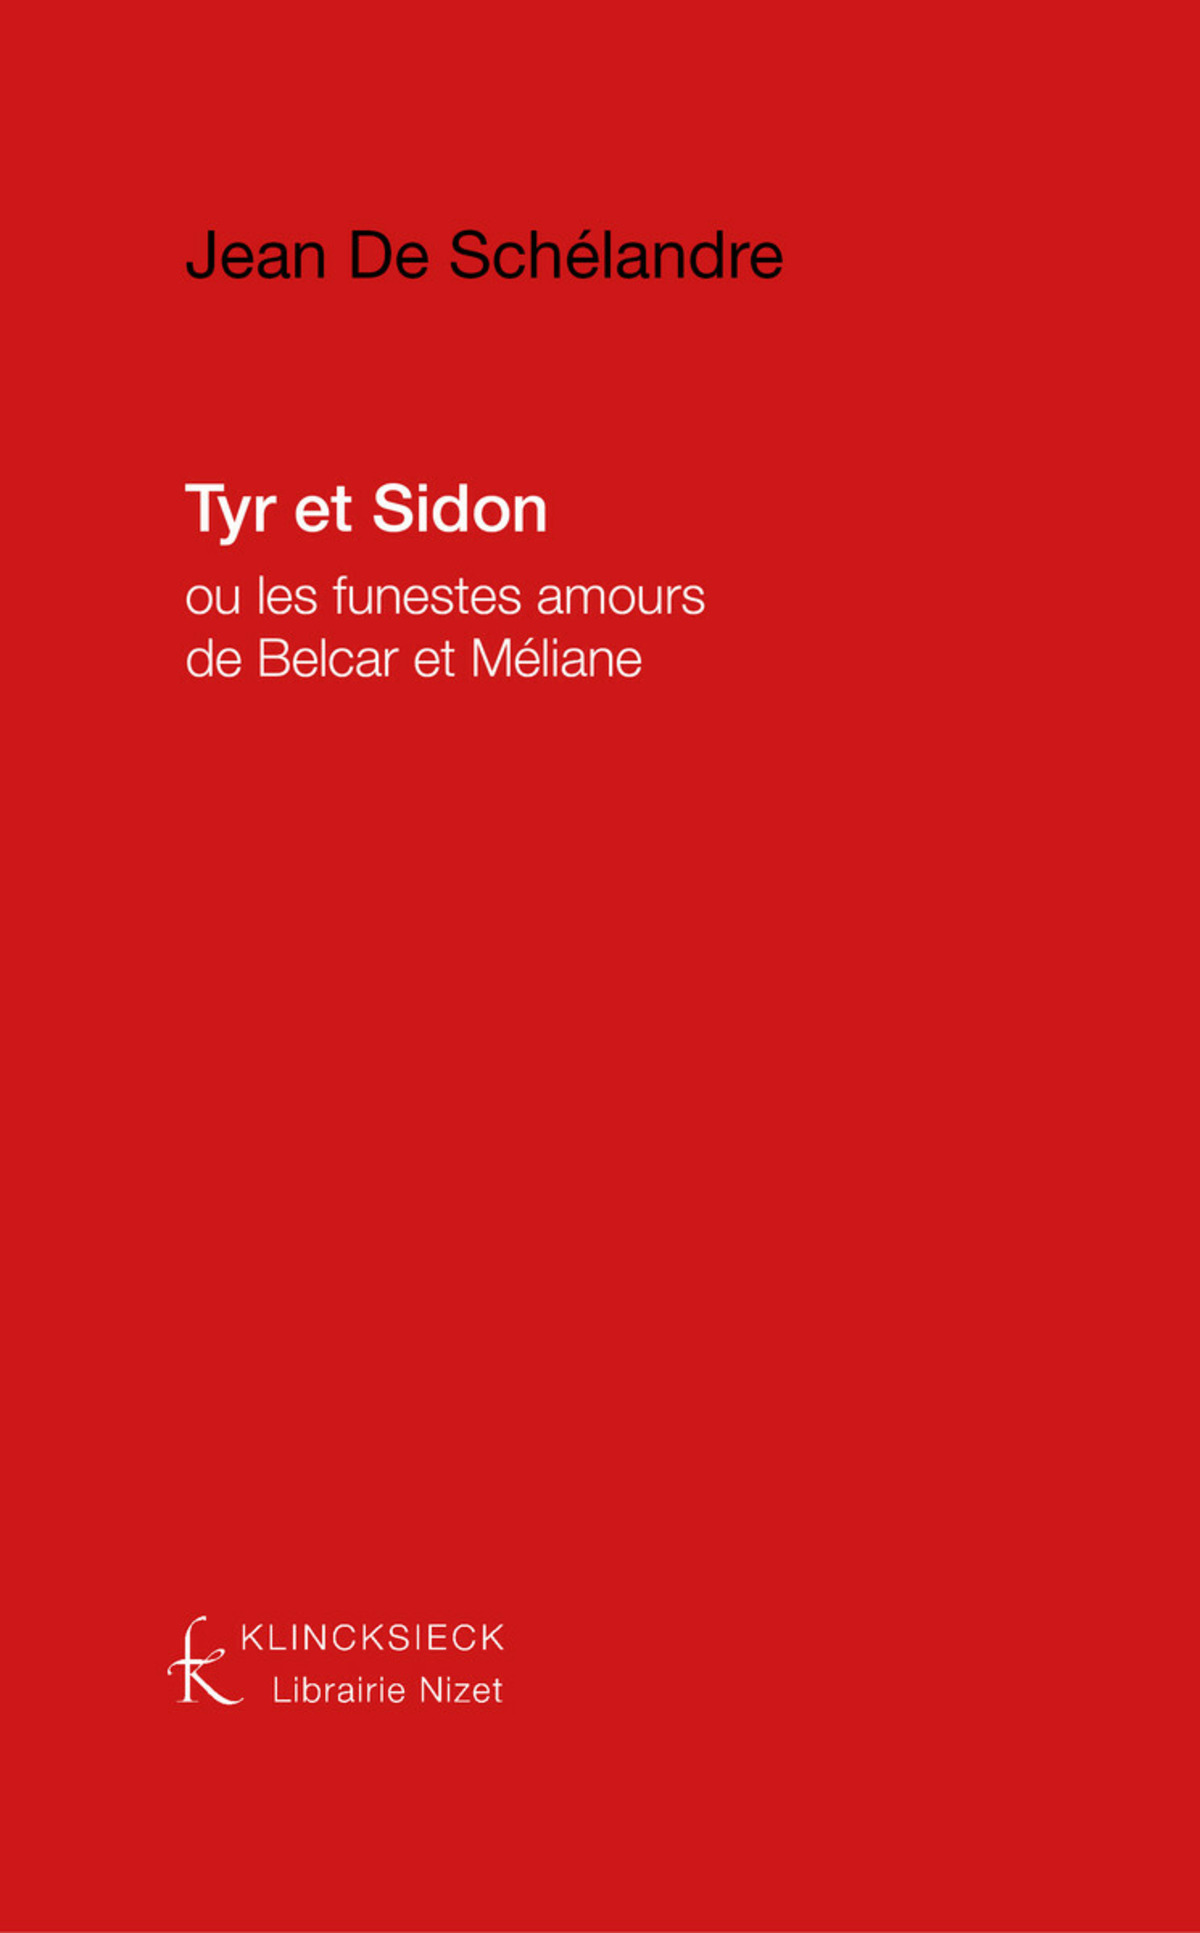 Tyr et Sidon ou les Funestes amours de Belcar et Méliane, tragédie, et Tyr et Sidon, tragicomédie divisée en deux journées